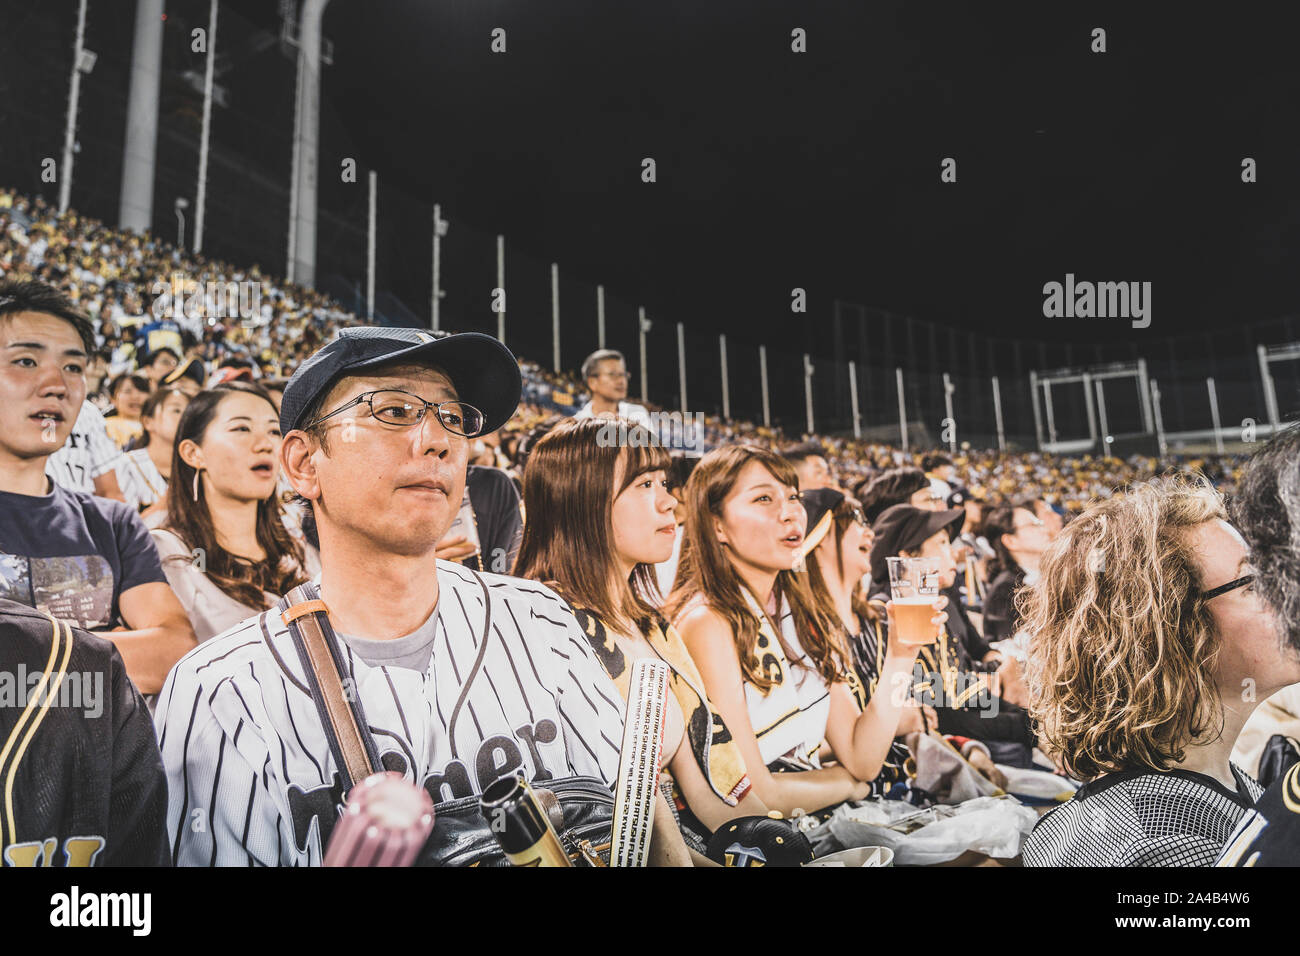 TOKYO, JAPON - 7 octobre 2018. Les fans de baseball japonais sont soutenir leur équipe. Les gens observent la partie de baseball sur le stade. Banque D'Images